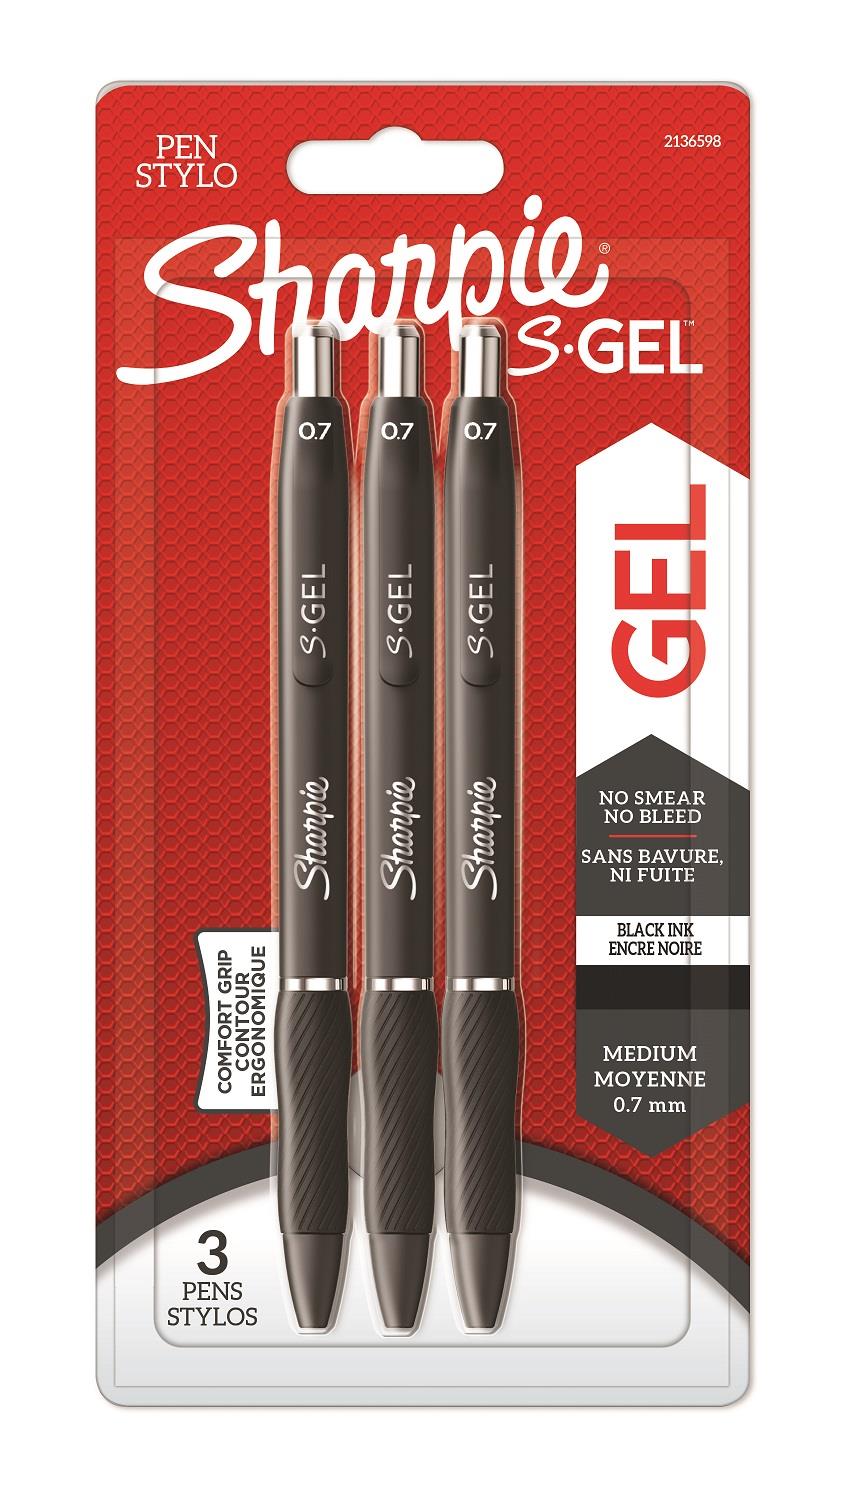 Gelové pero Sharpie S-GEL 3ks - černé